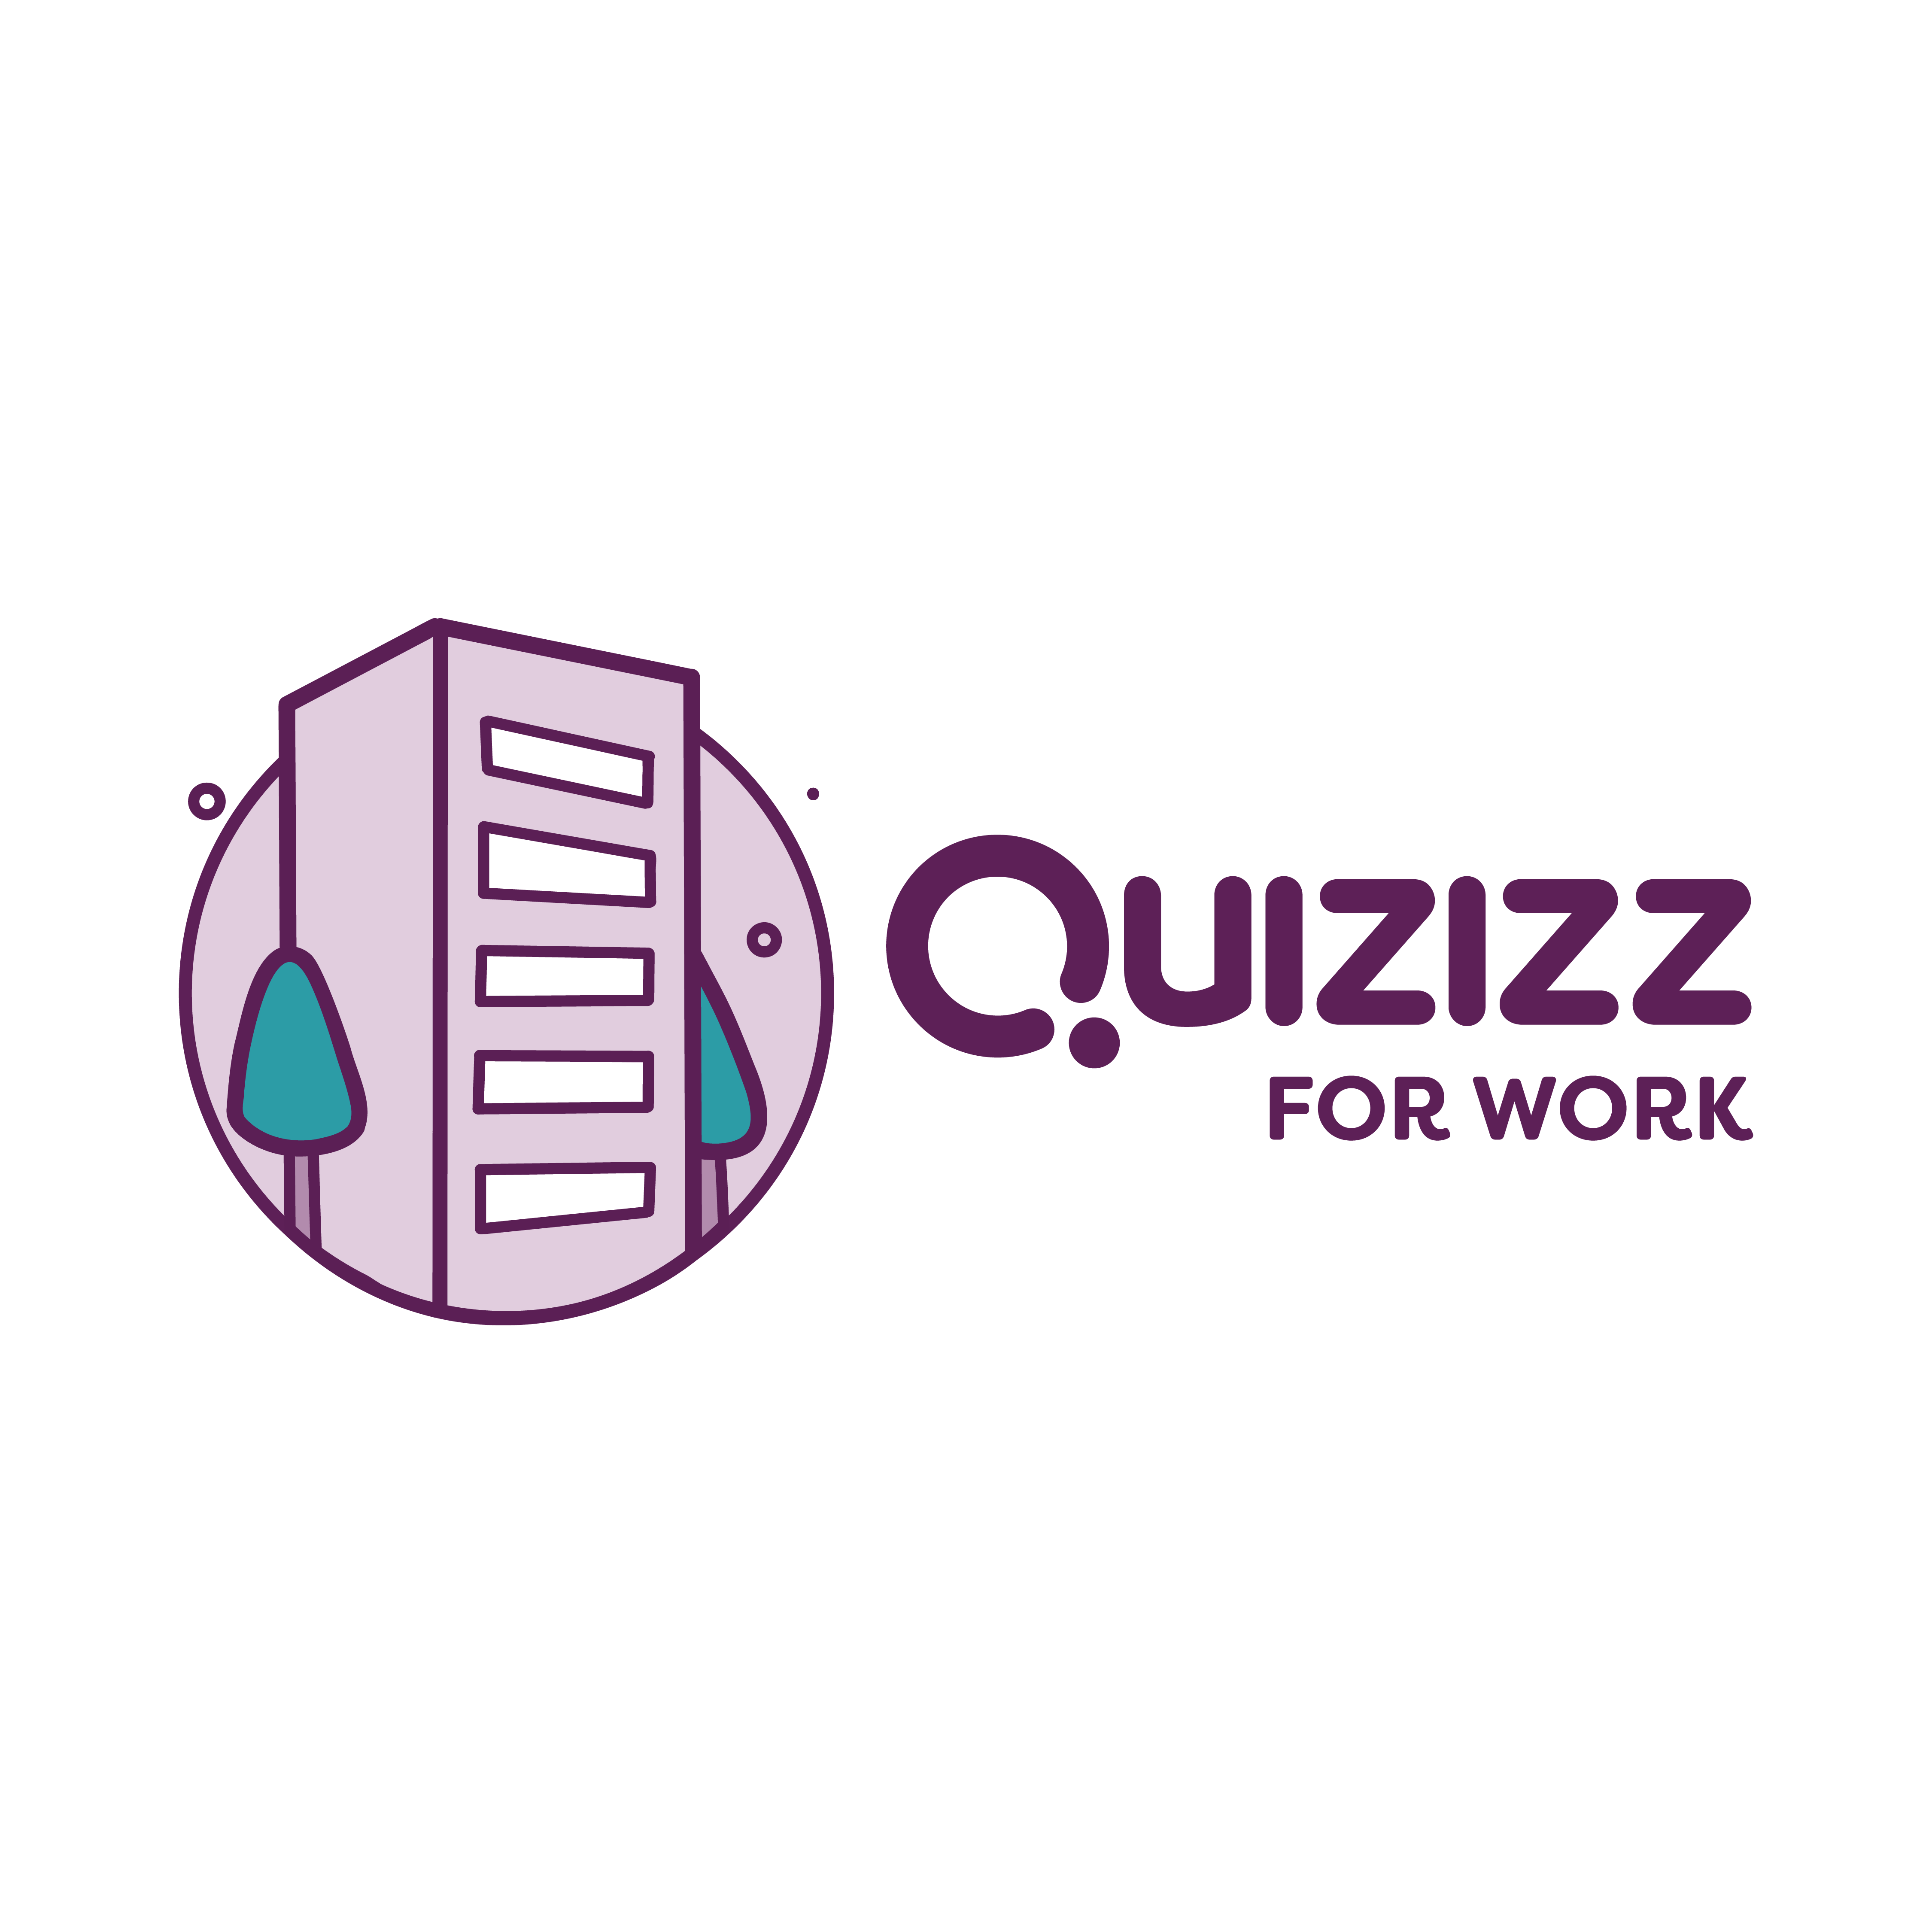 Quizizz Reviews 2023: Details, Pricing, & Features